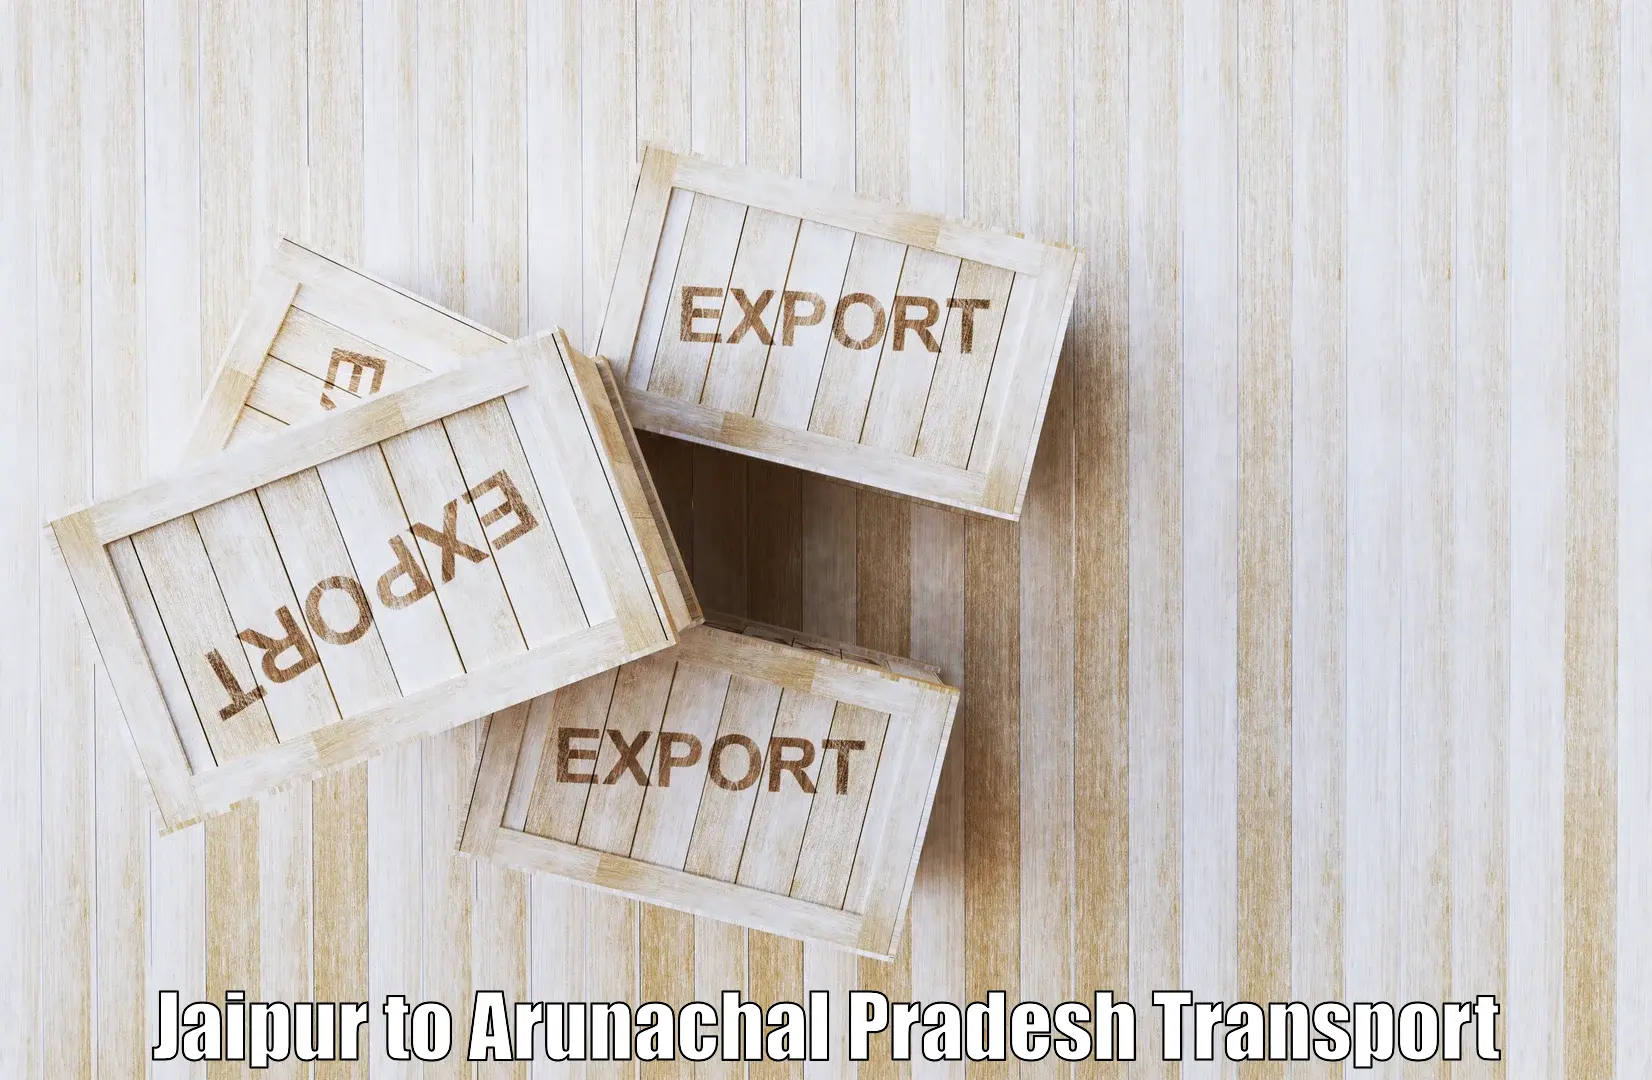 Nearest transport service Jaipur to Arunachal Pradesh